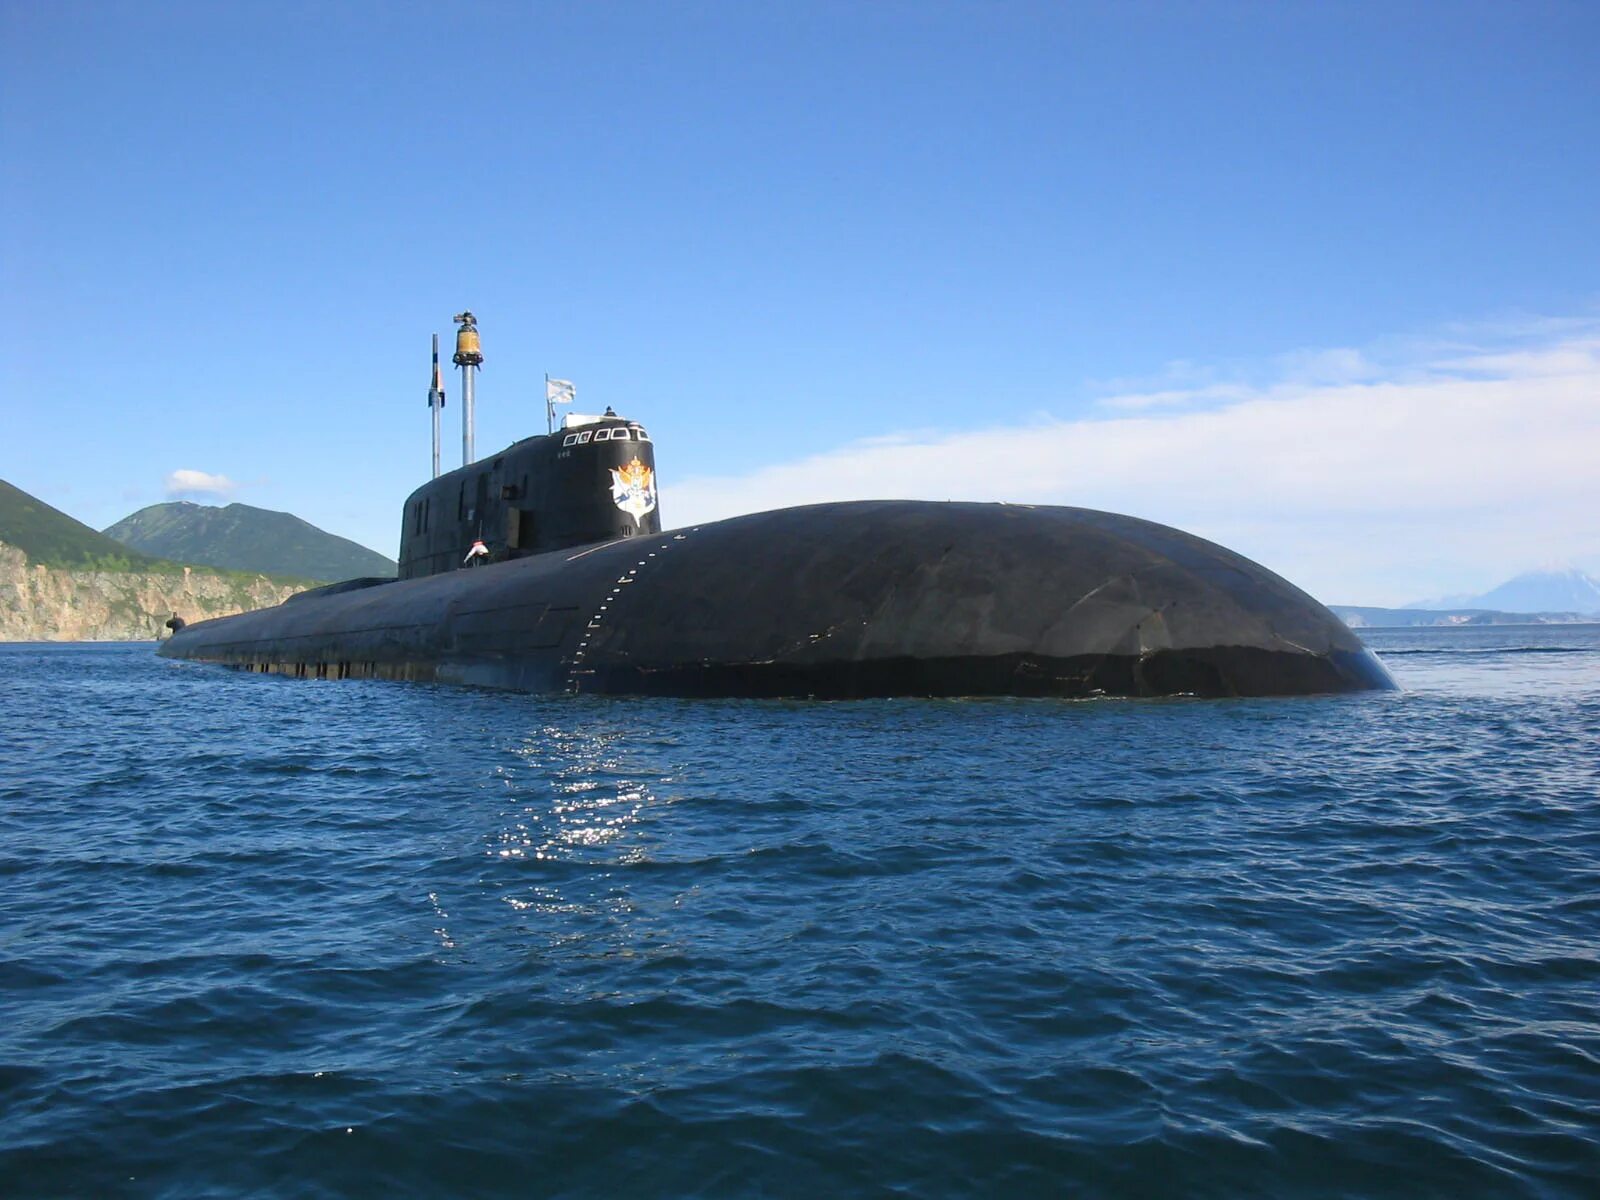 Подводный флот тихоокеанского флота. Проект 949а Антей. АПЛ проекта 949а («Антей») «Иркутск». Атомная подводная лодка Томск. Подводные лодки проекта 941 «акула».